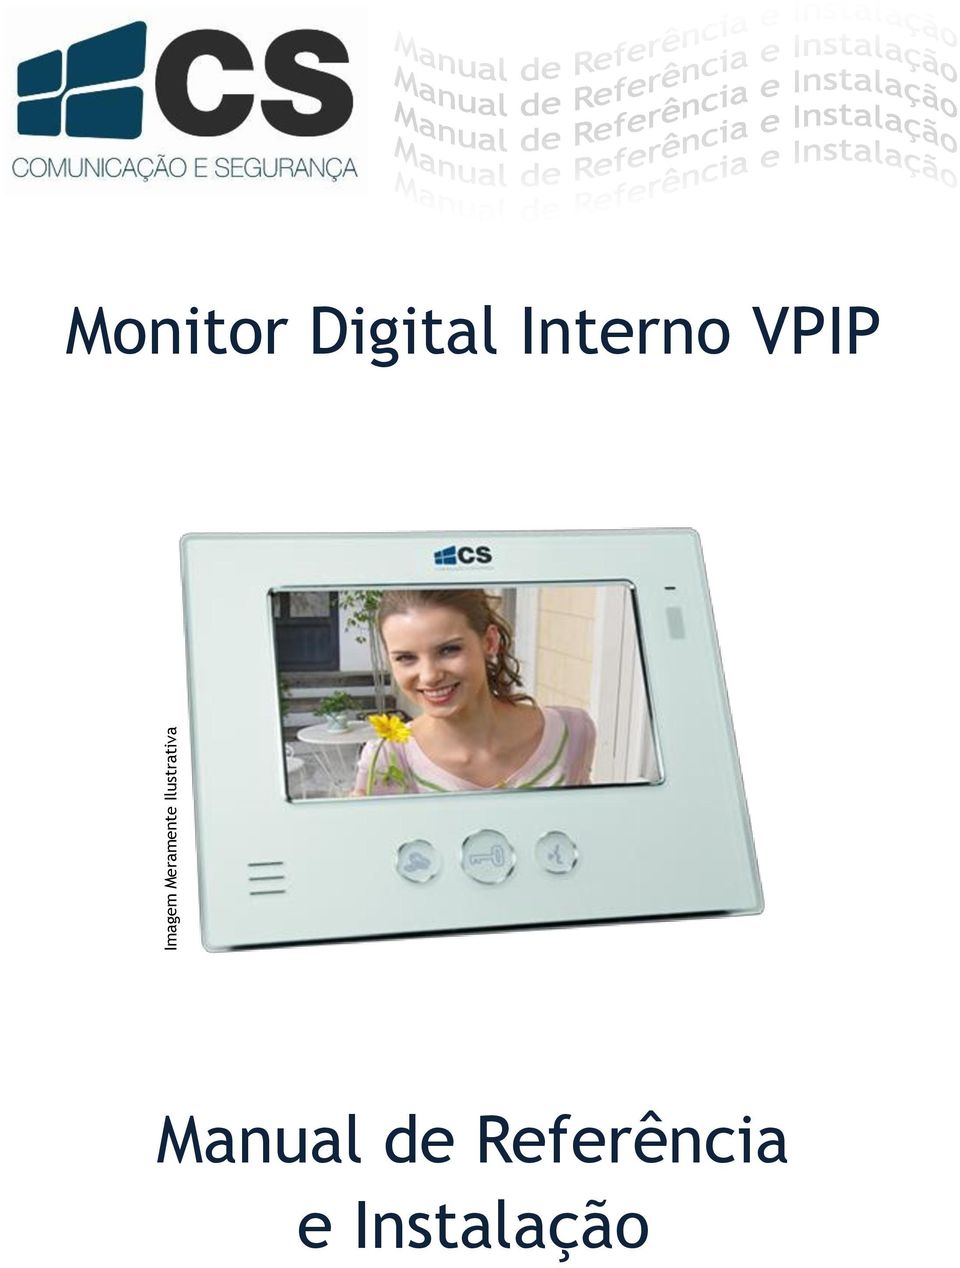 Digital Interno VPIP